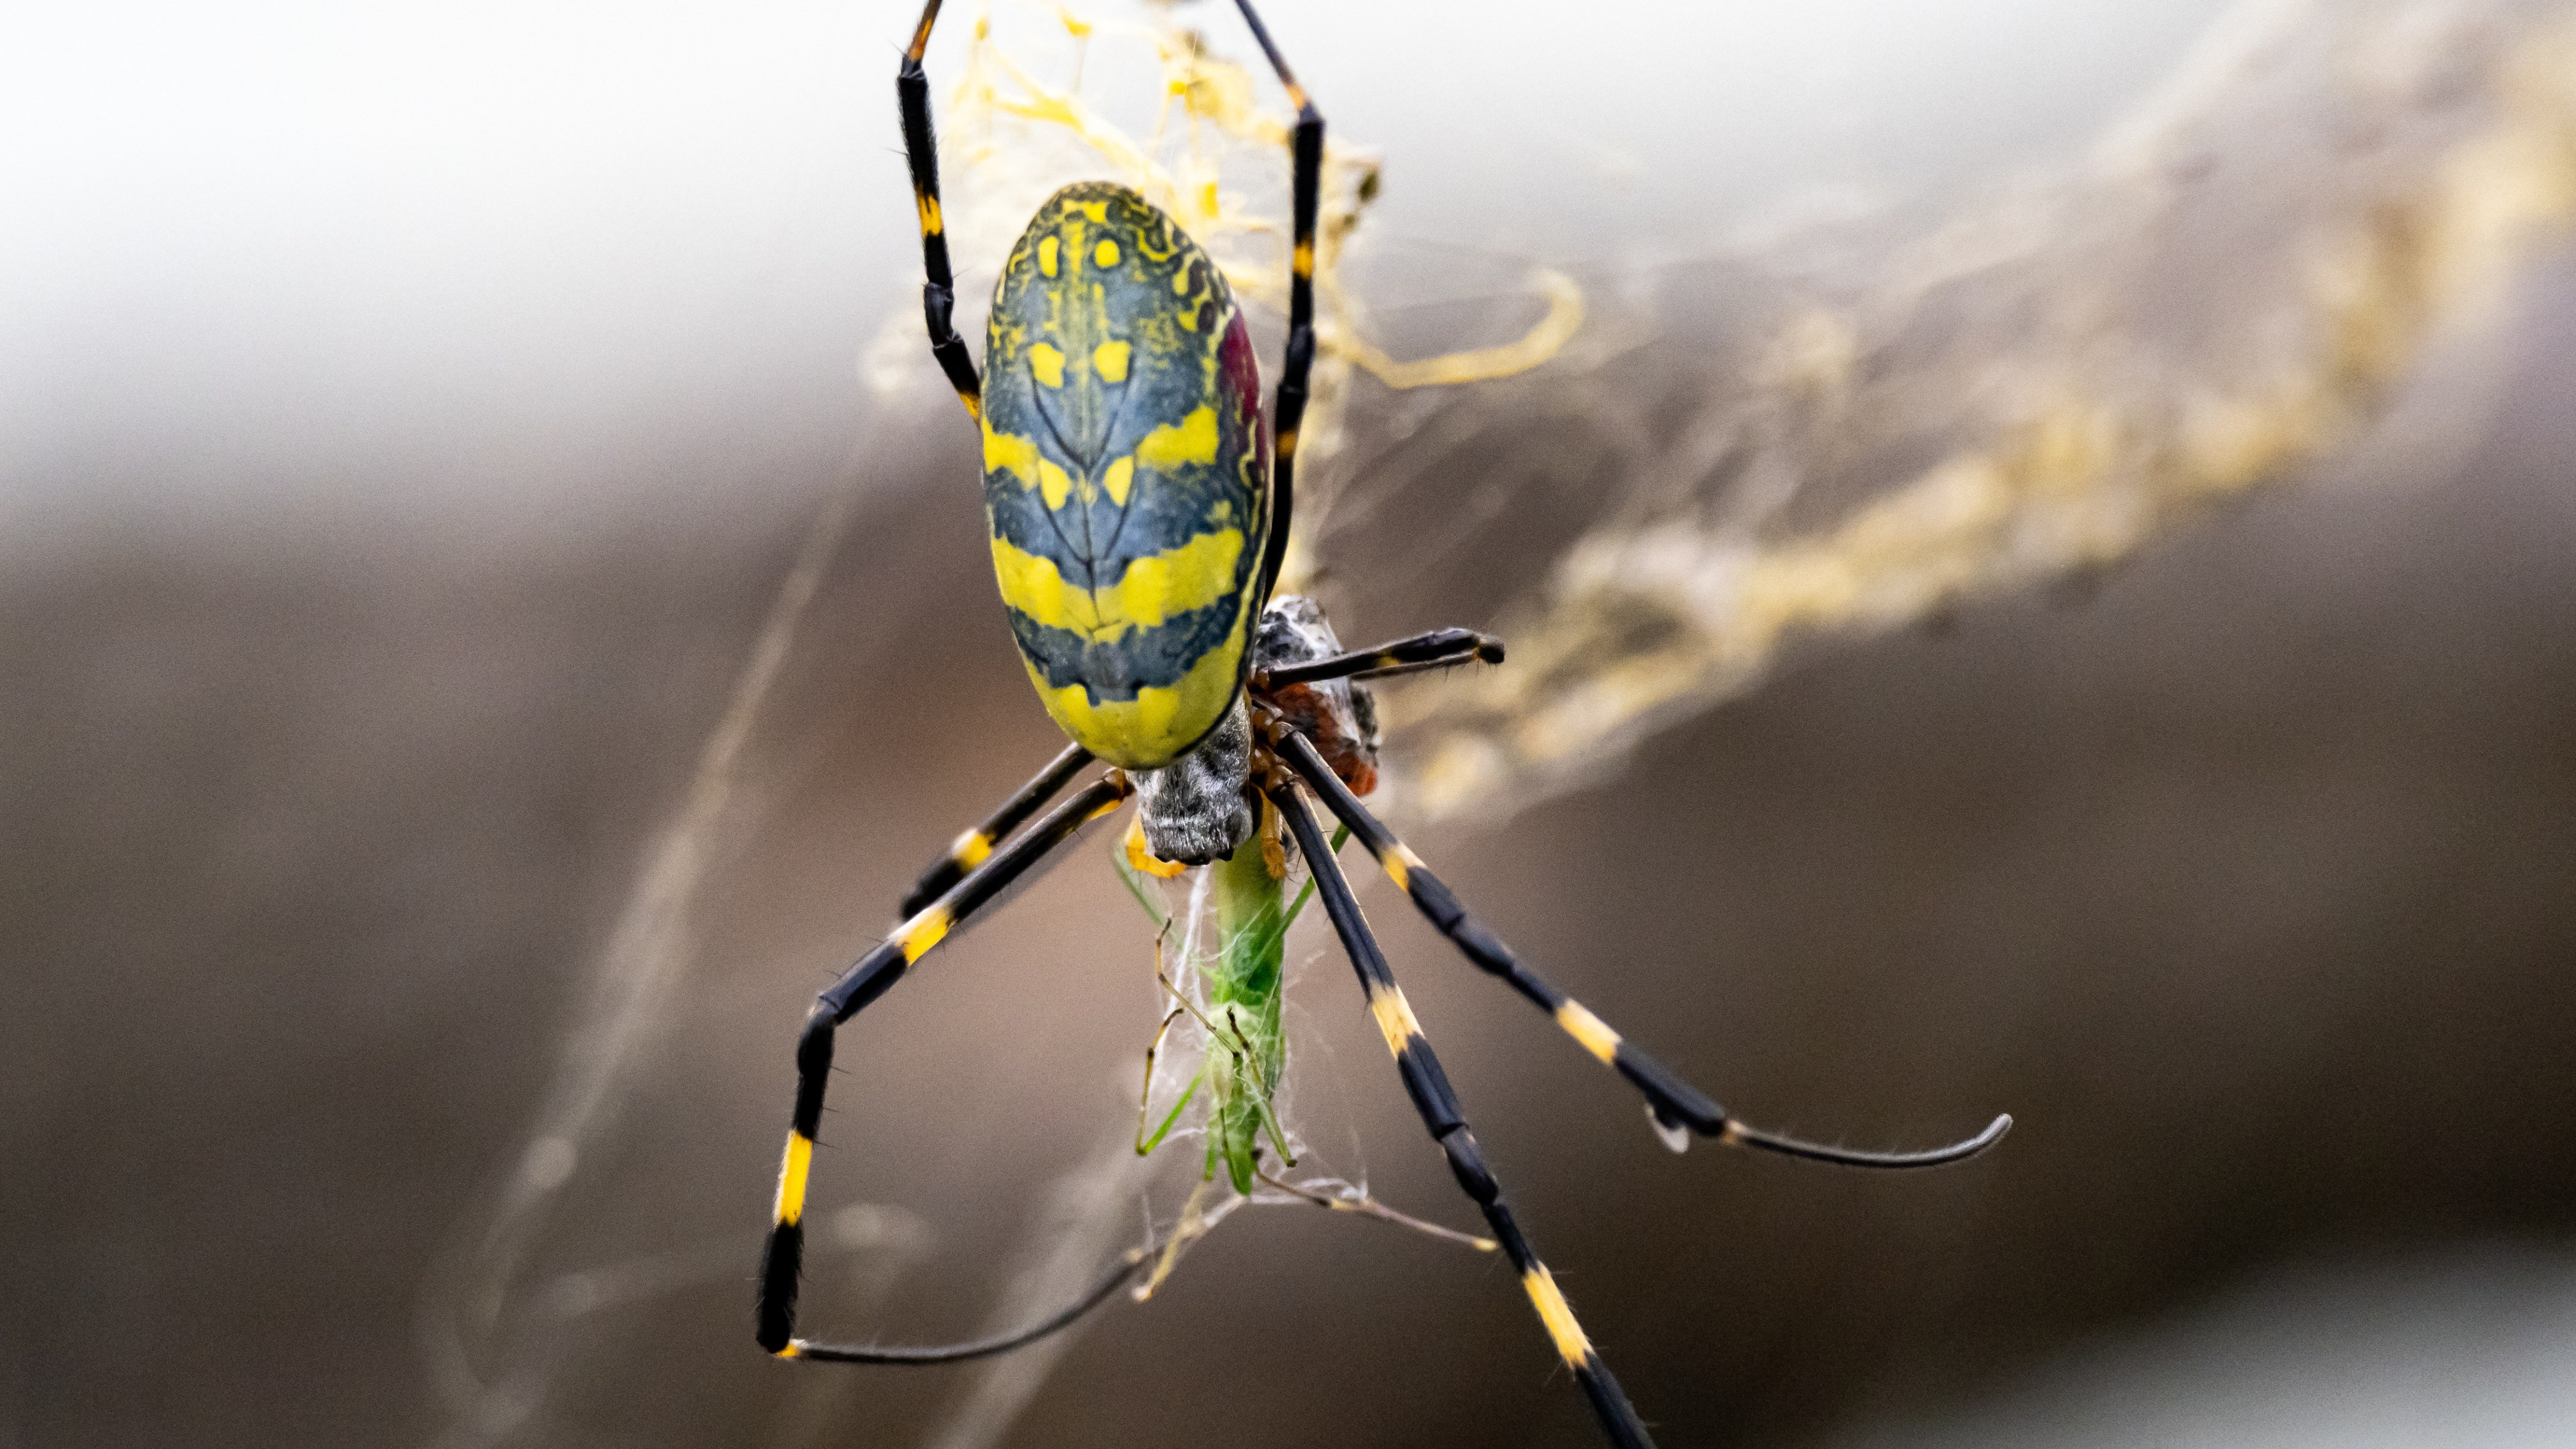 A Joro spider feeding on a small grasshopper